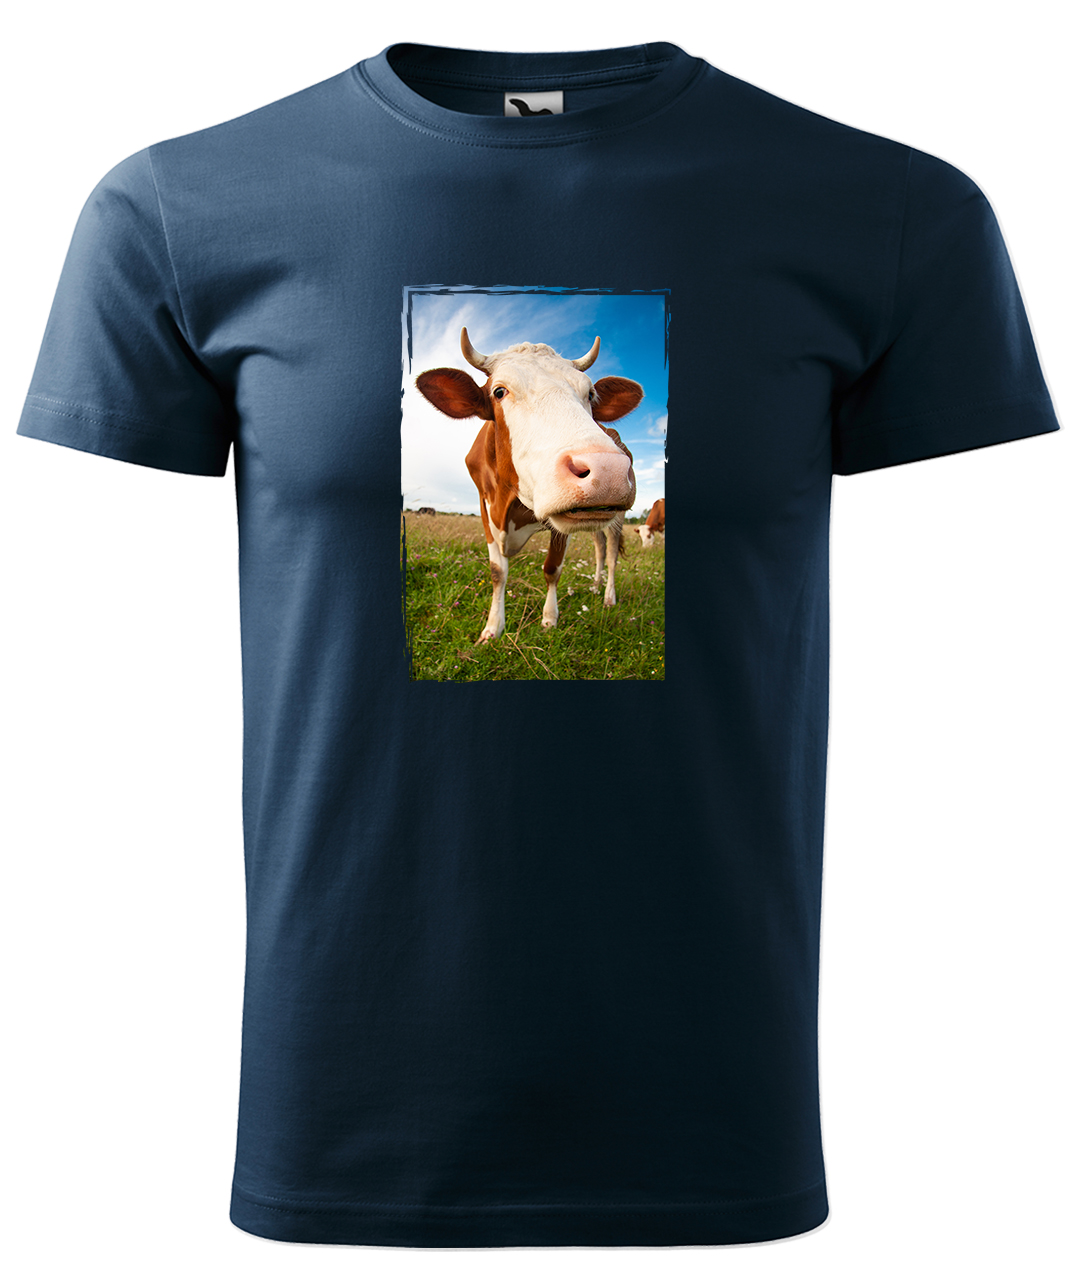 Dětské tričko s krávou - Na pastvě Velikost: 8 let / 134 cm, Barva: Námořní modrá (02), Délka rukávu: Krátký rukáv